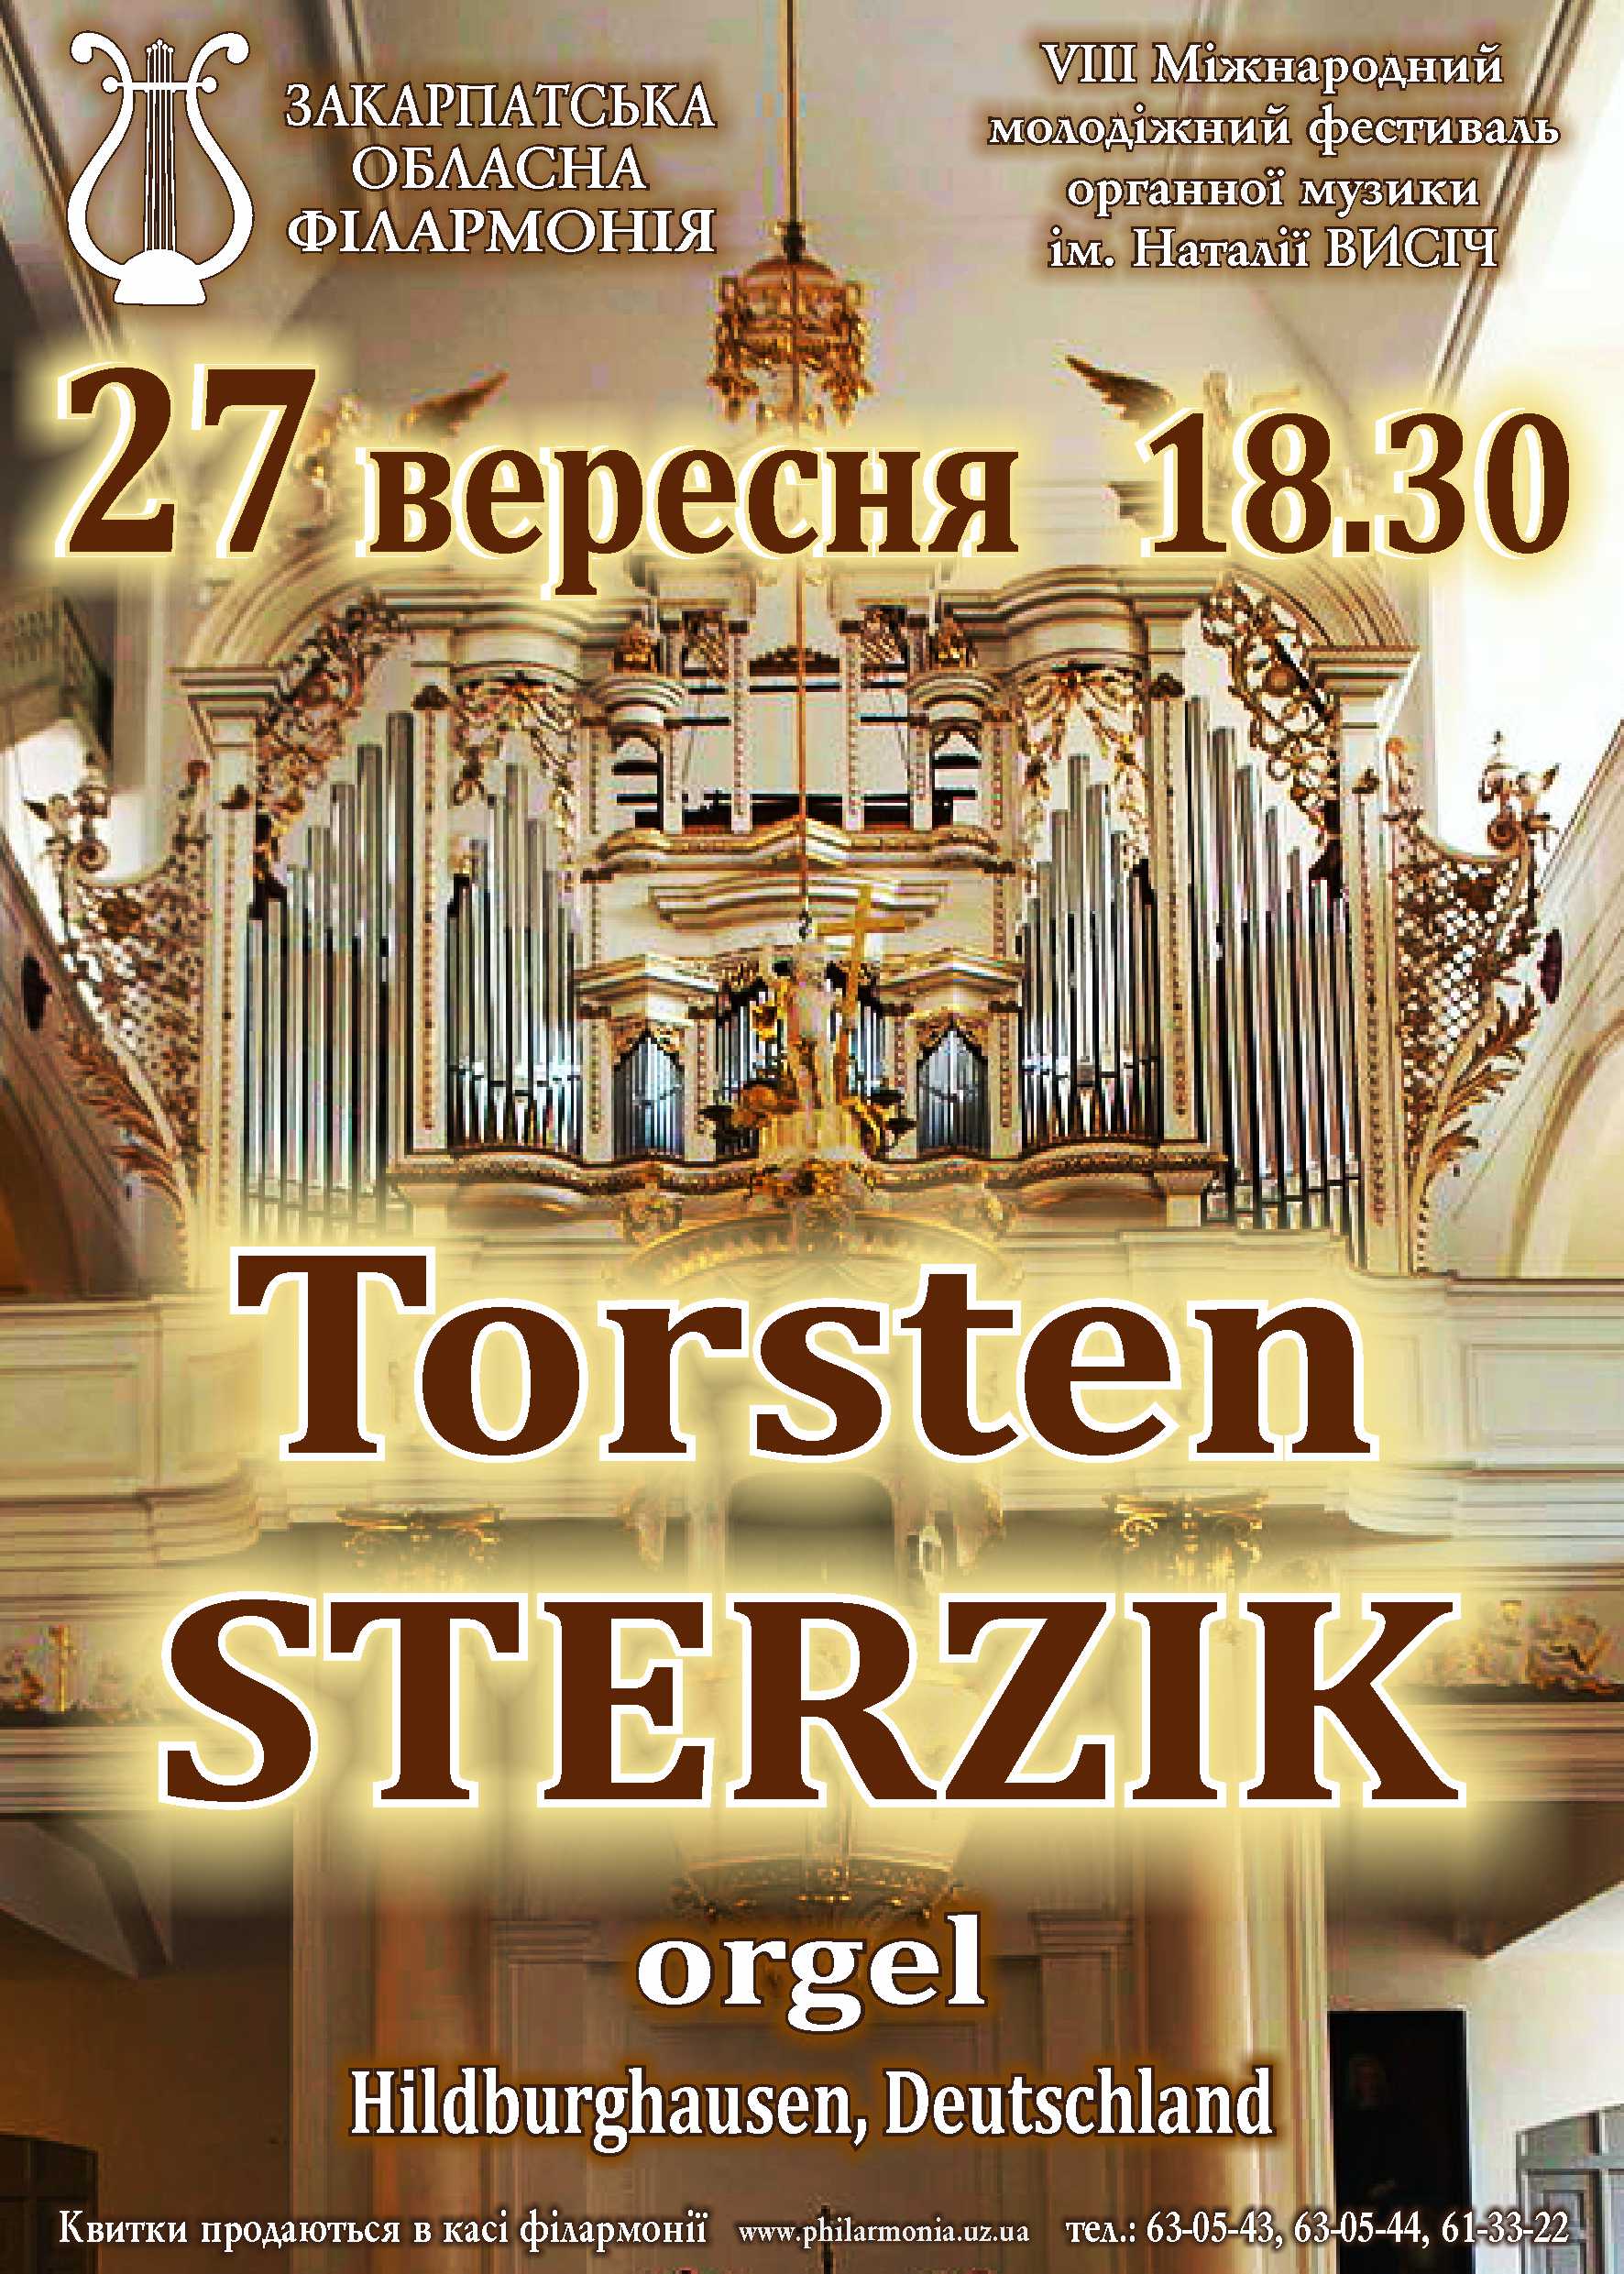 У Закарпатській обласній філармонії триває VIII Міжнародний молодіжний фестиваль органної музики ім.Наталії Висіч.